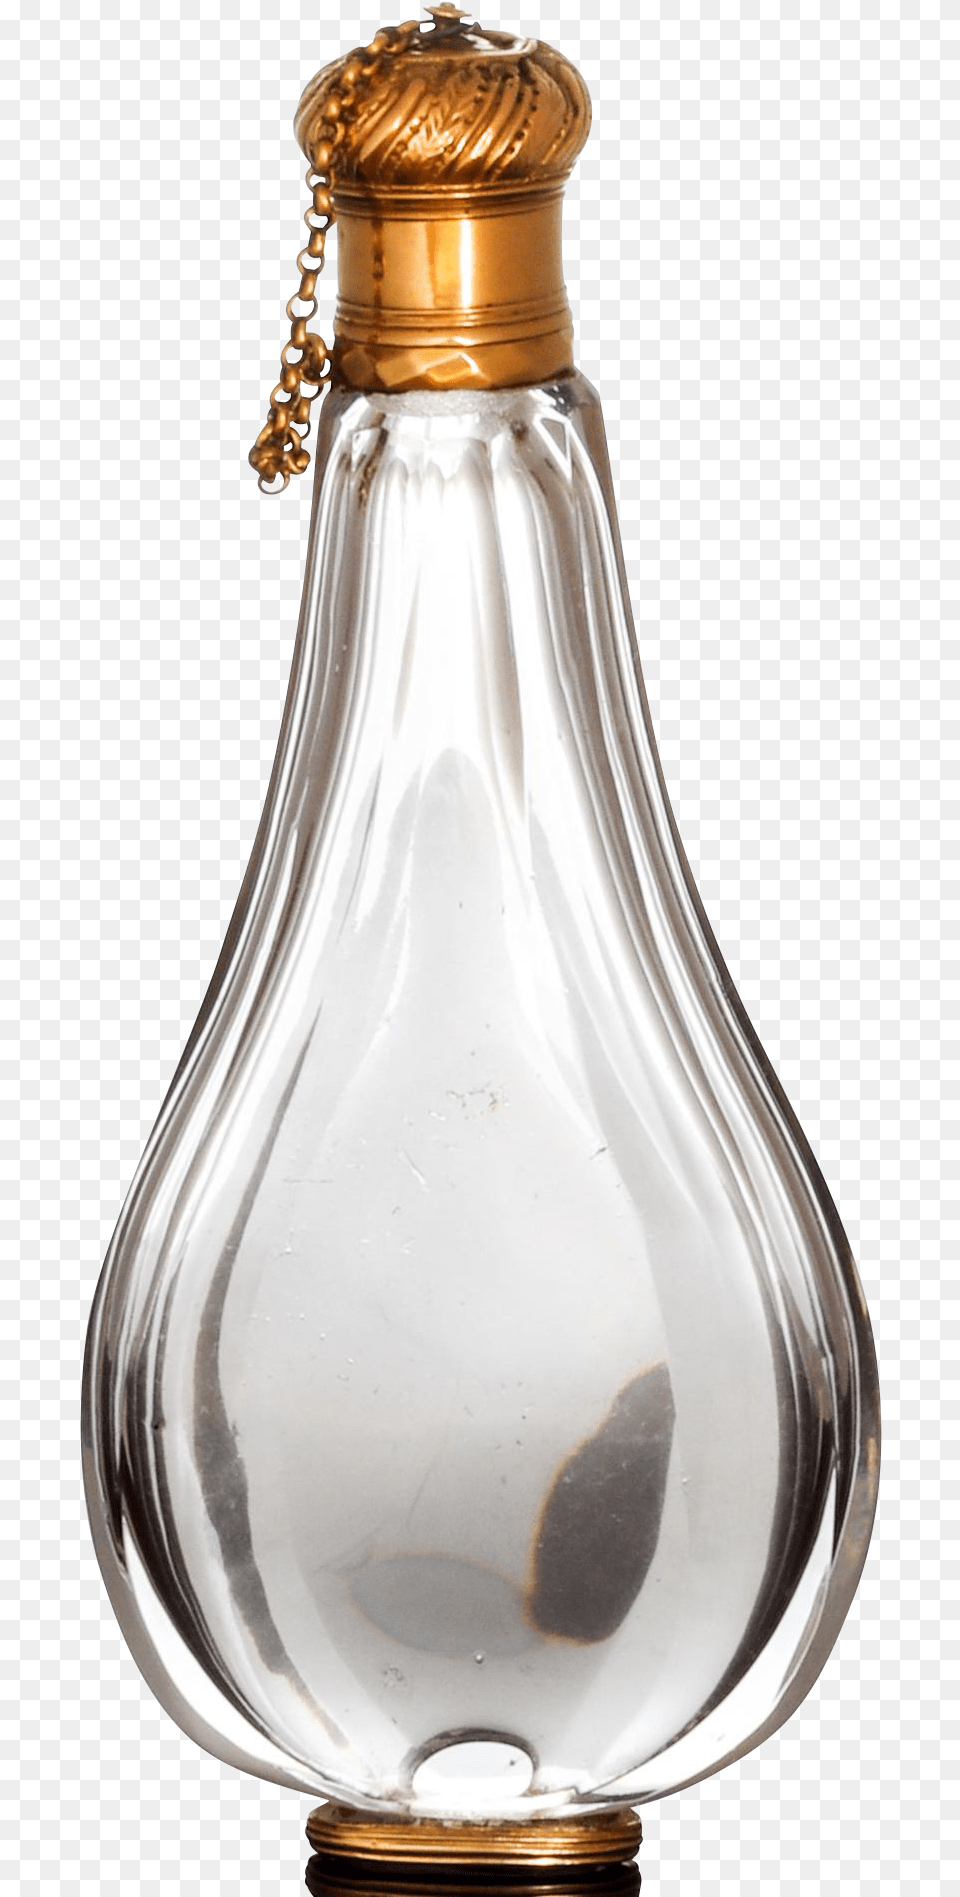 Transparent Gold Champagne Bottle Transparent Background Perfume Bottle, Lamp, Light Png